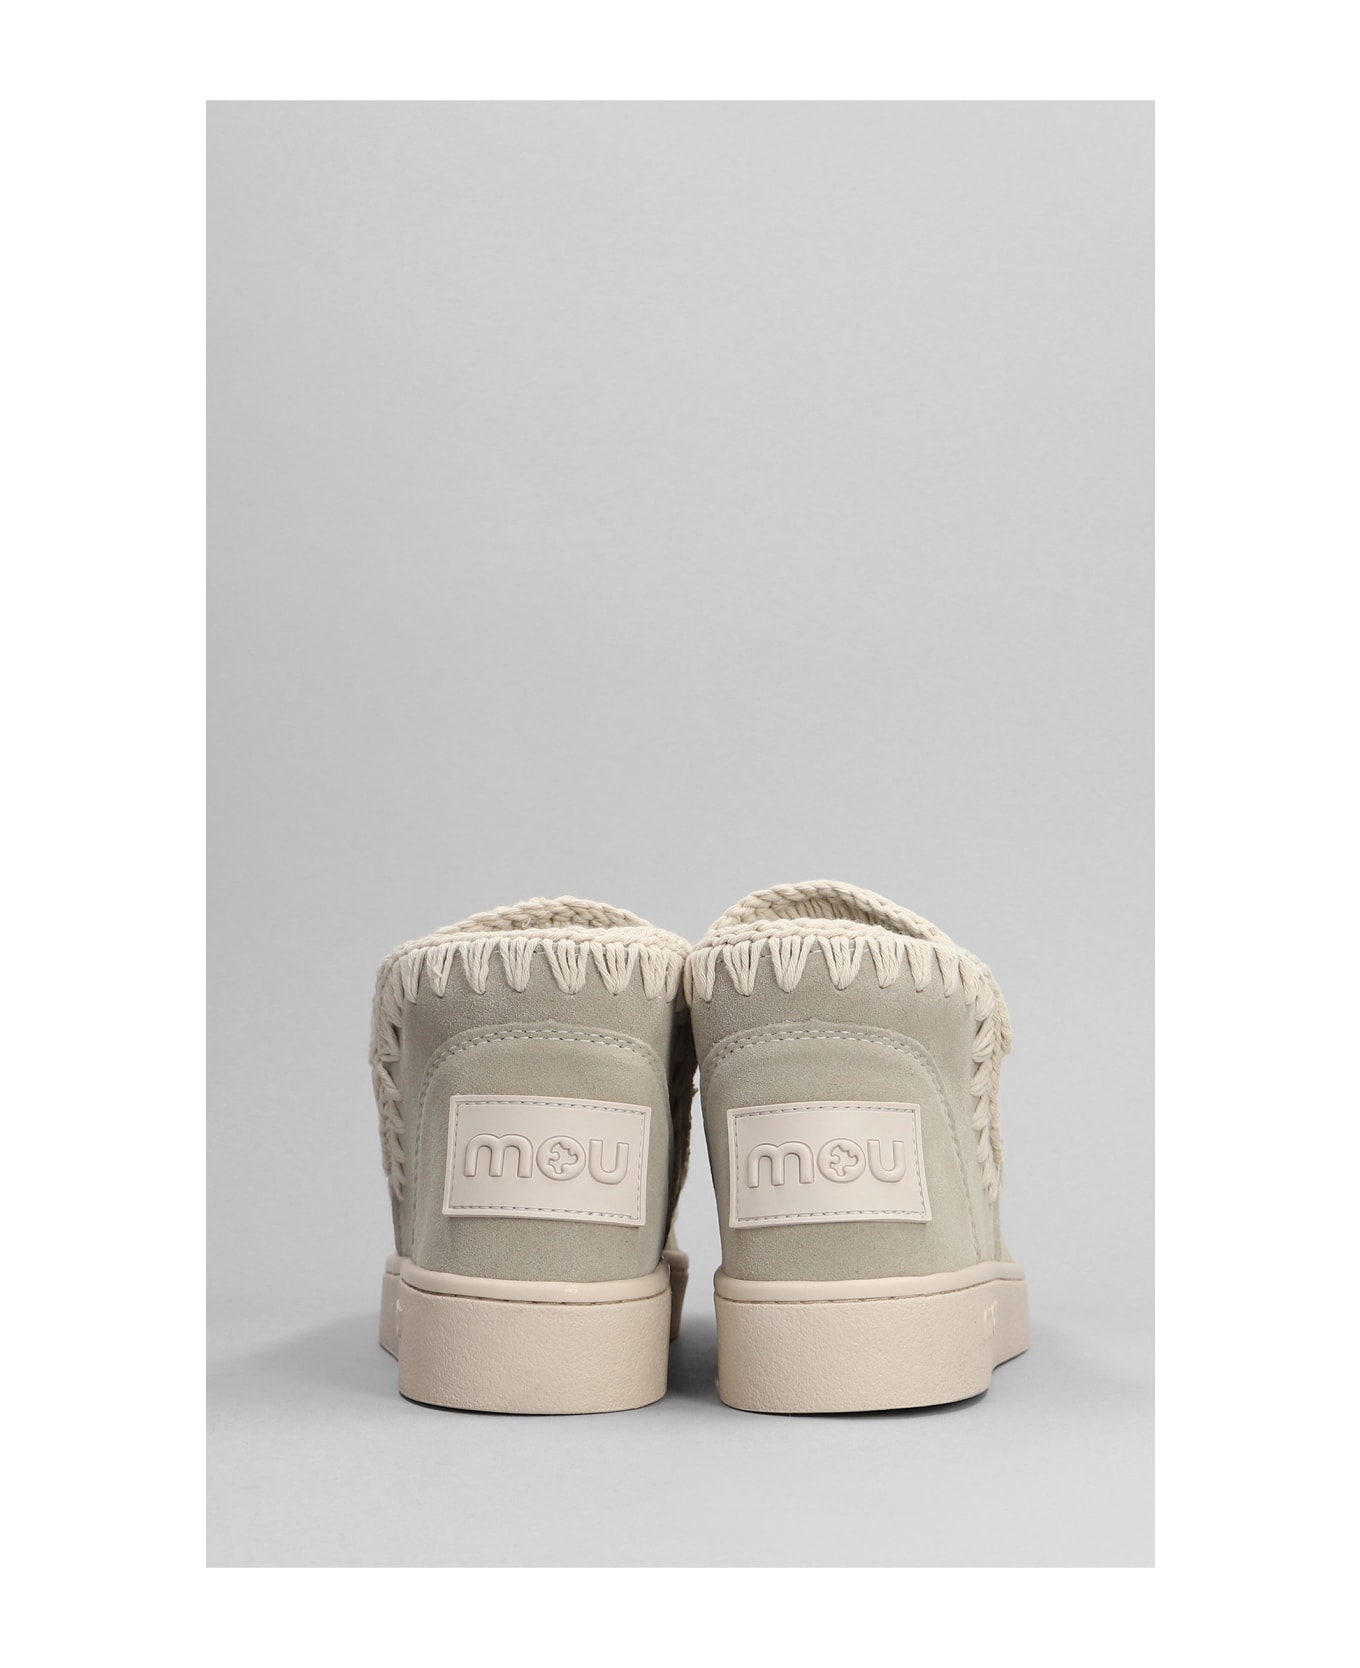 Mou Sneaker Monochrome Low Heels Ankle Boots In Beige Suede - beige スニーカー